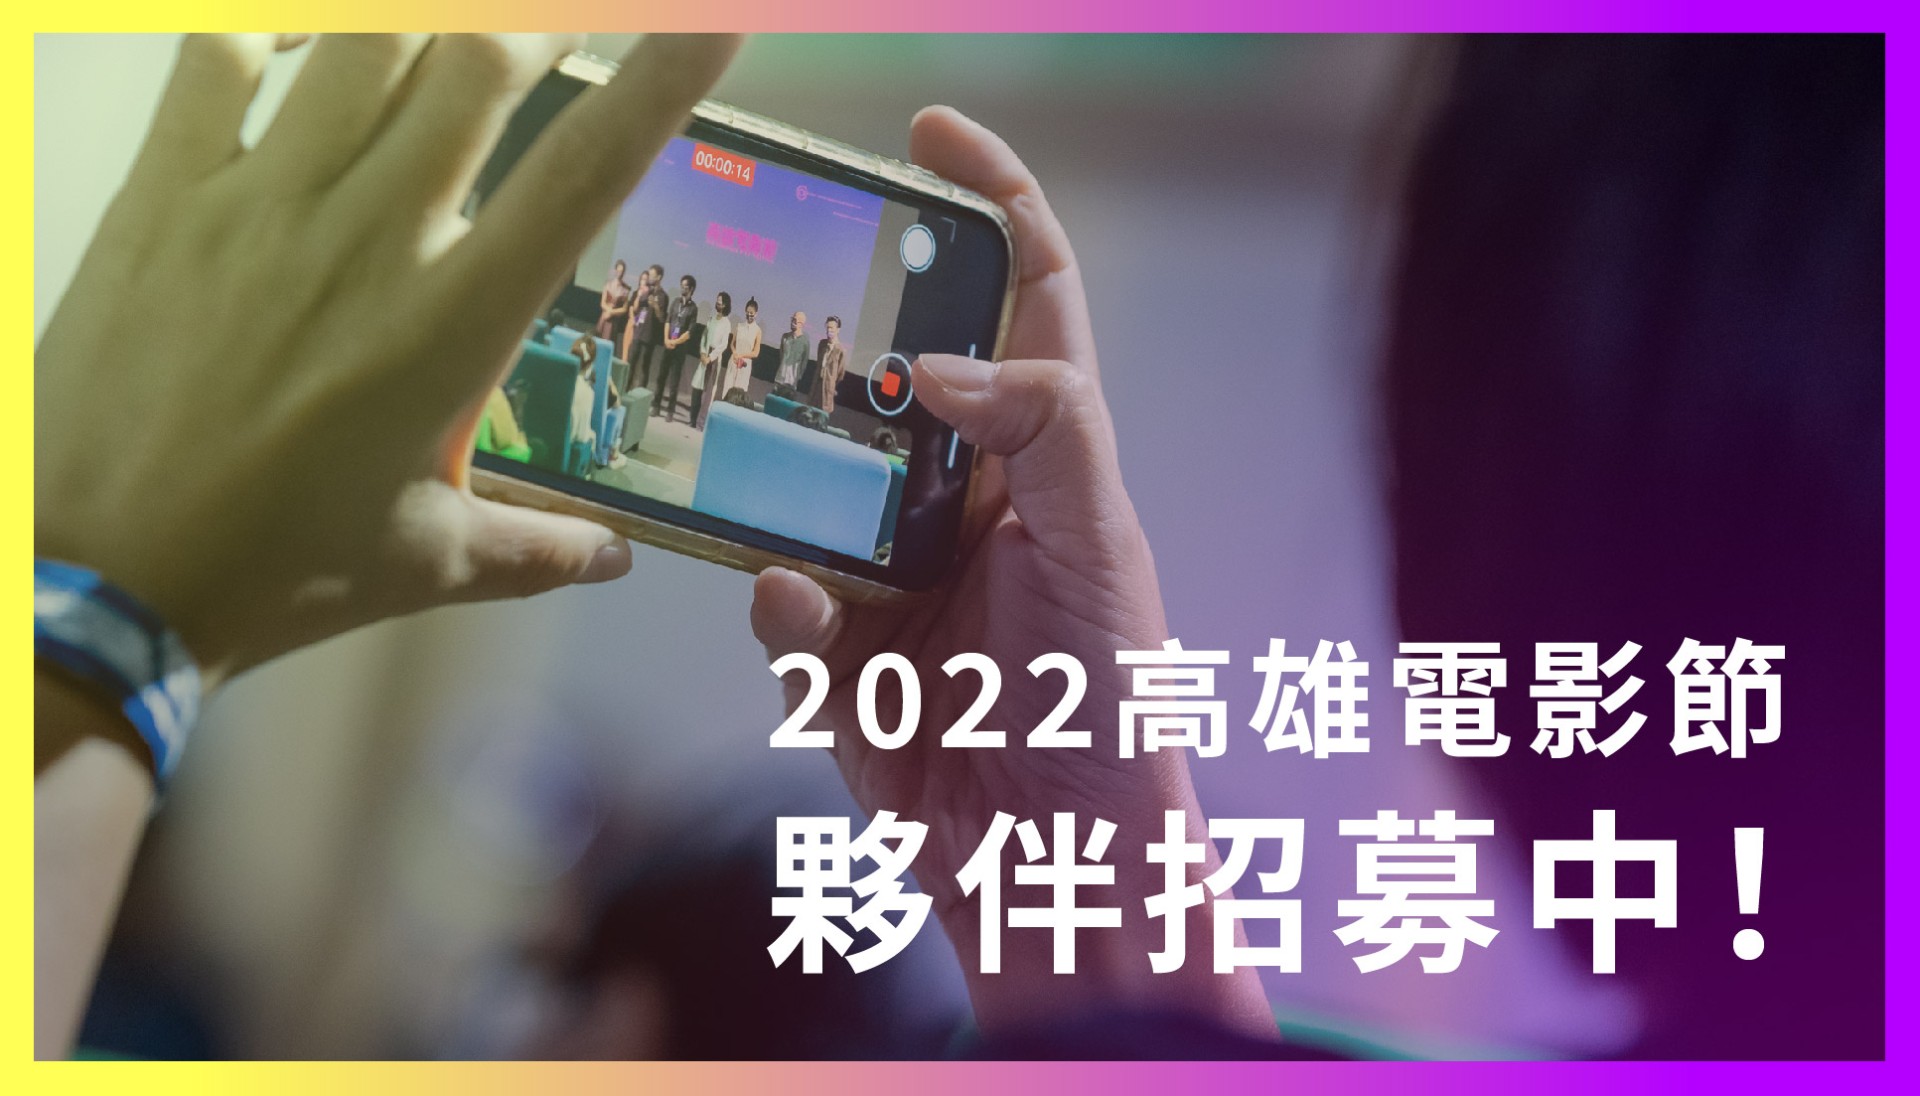 【徵才】2022高雄電影節徵求夥伴-圖片